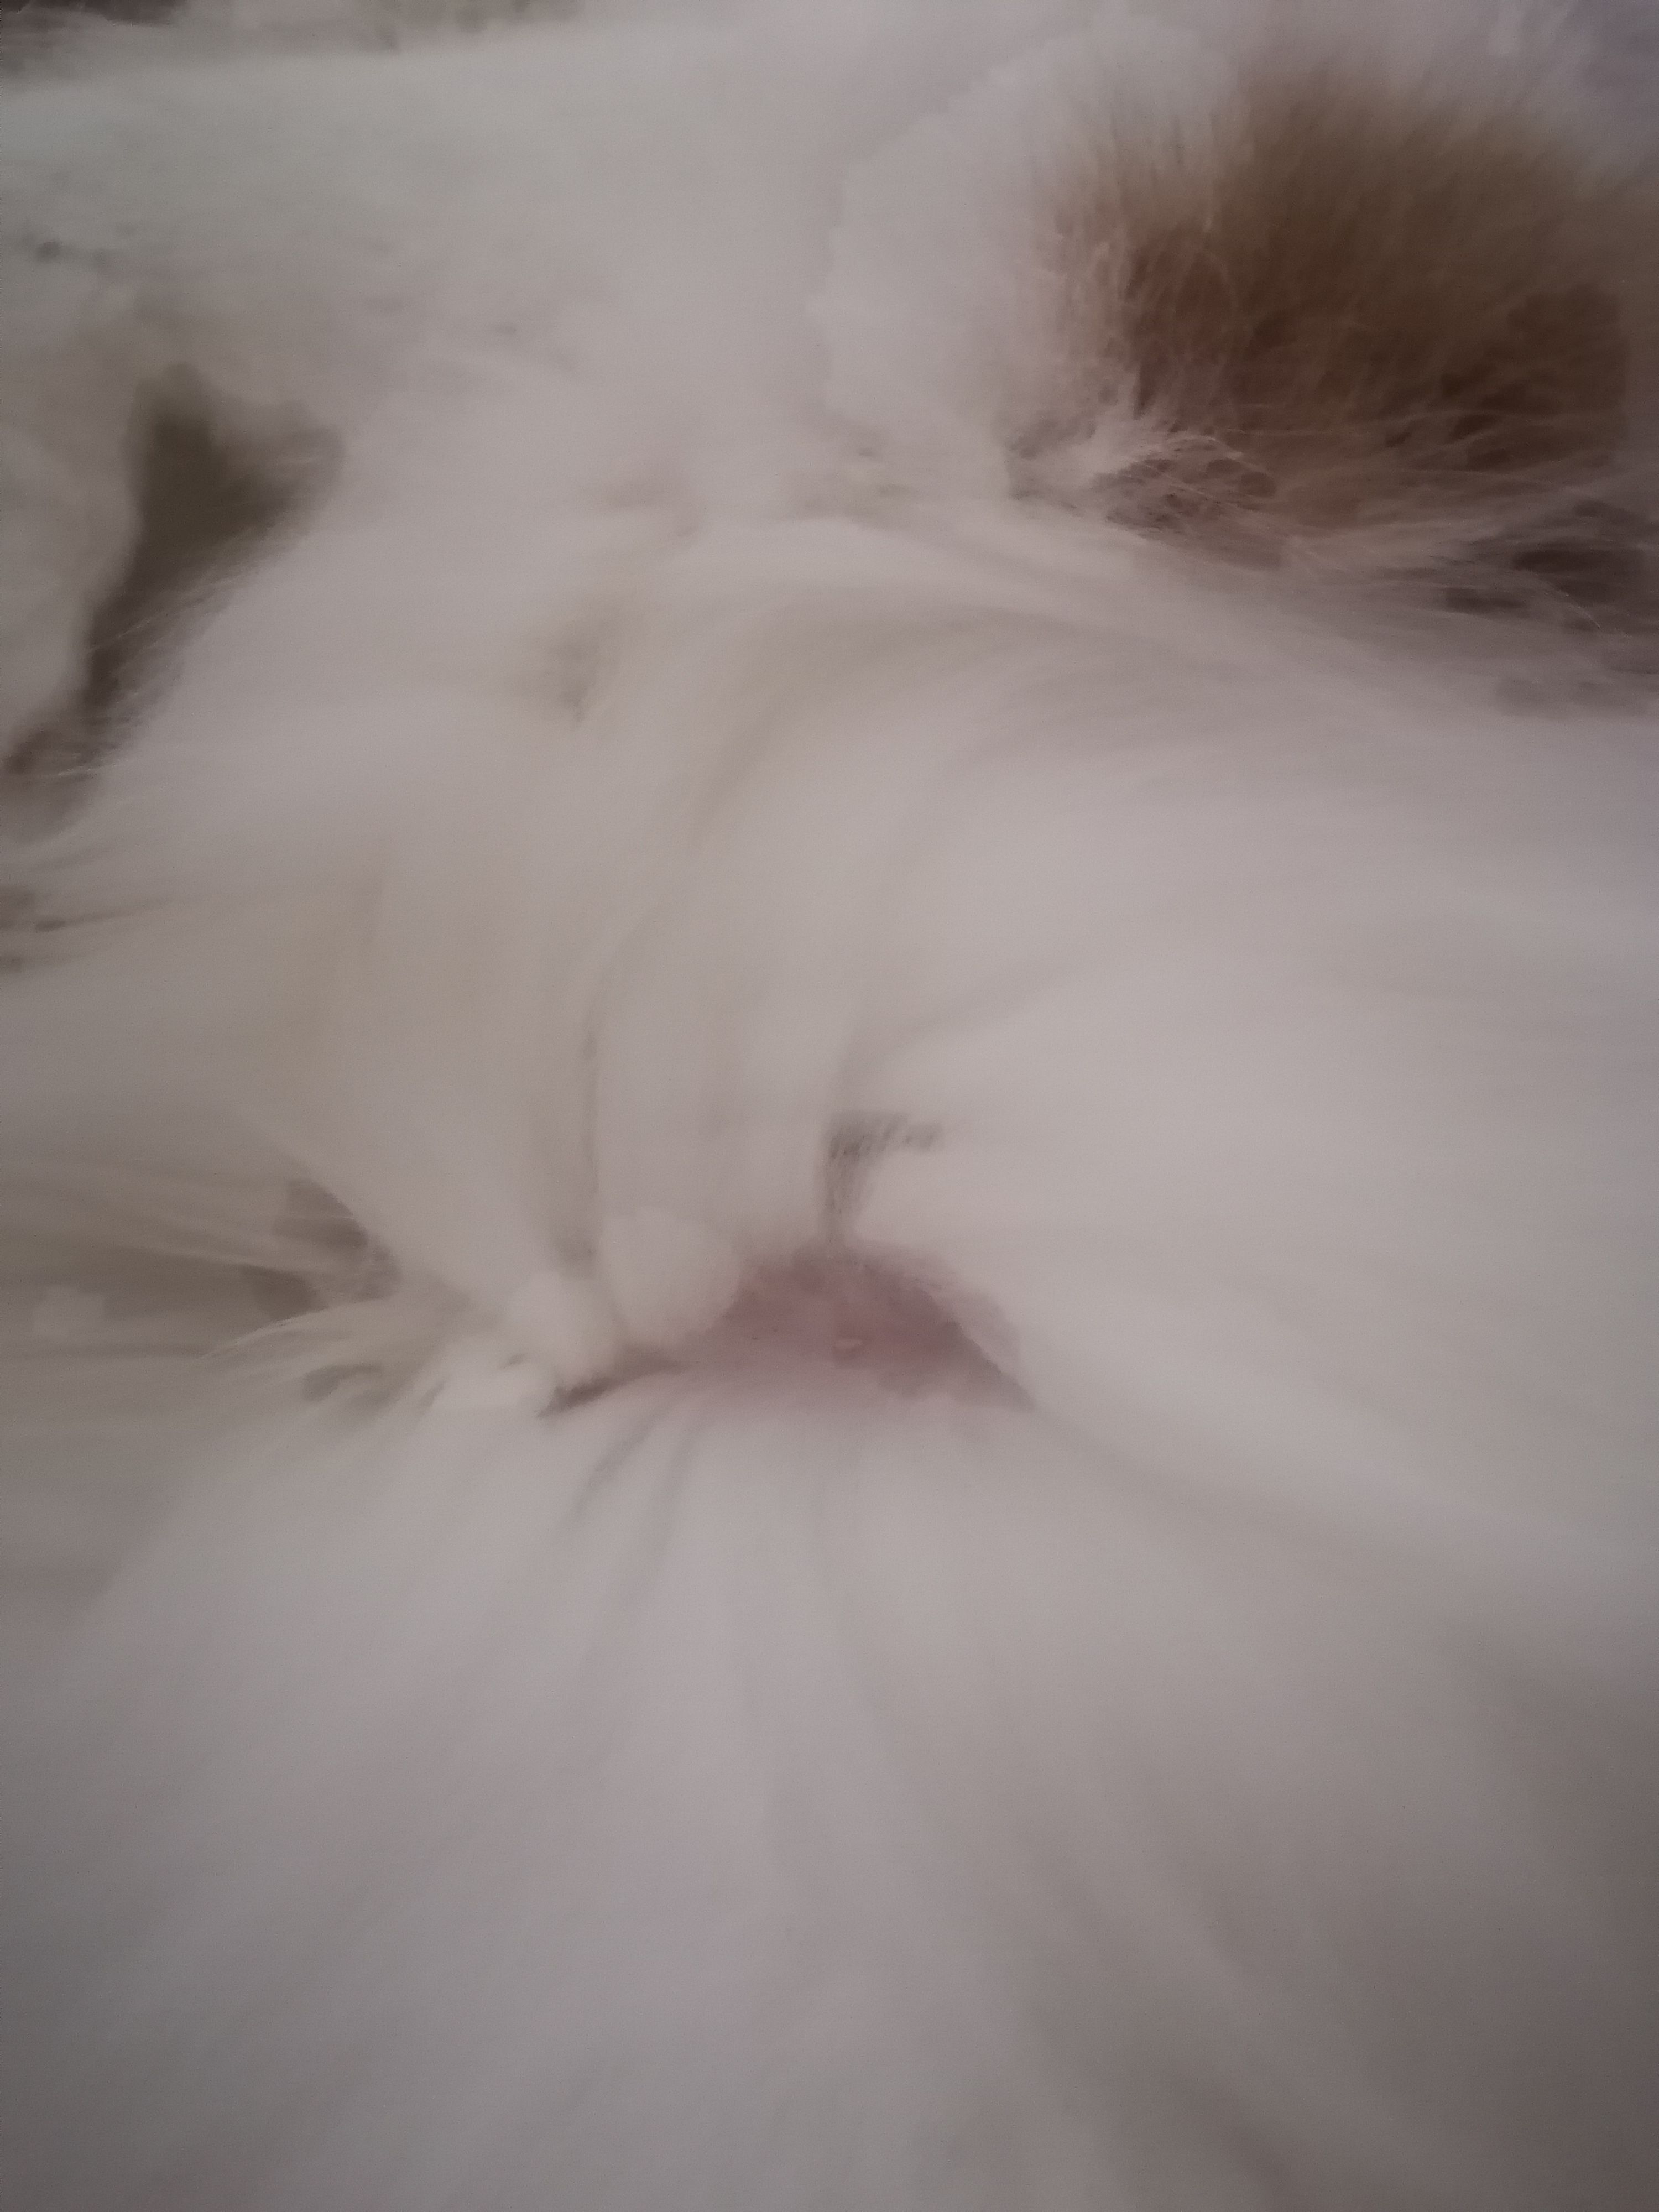 Bouton et manque de poils sur le ventre de mon chat - Forum Santé ...